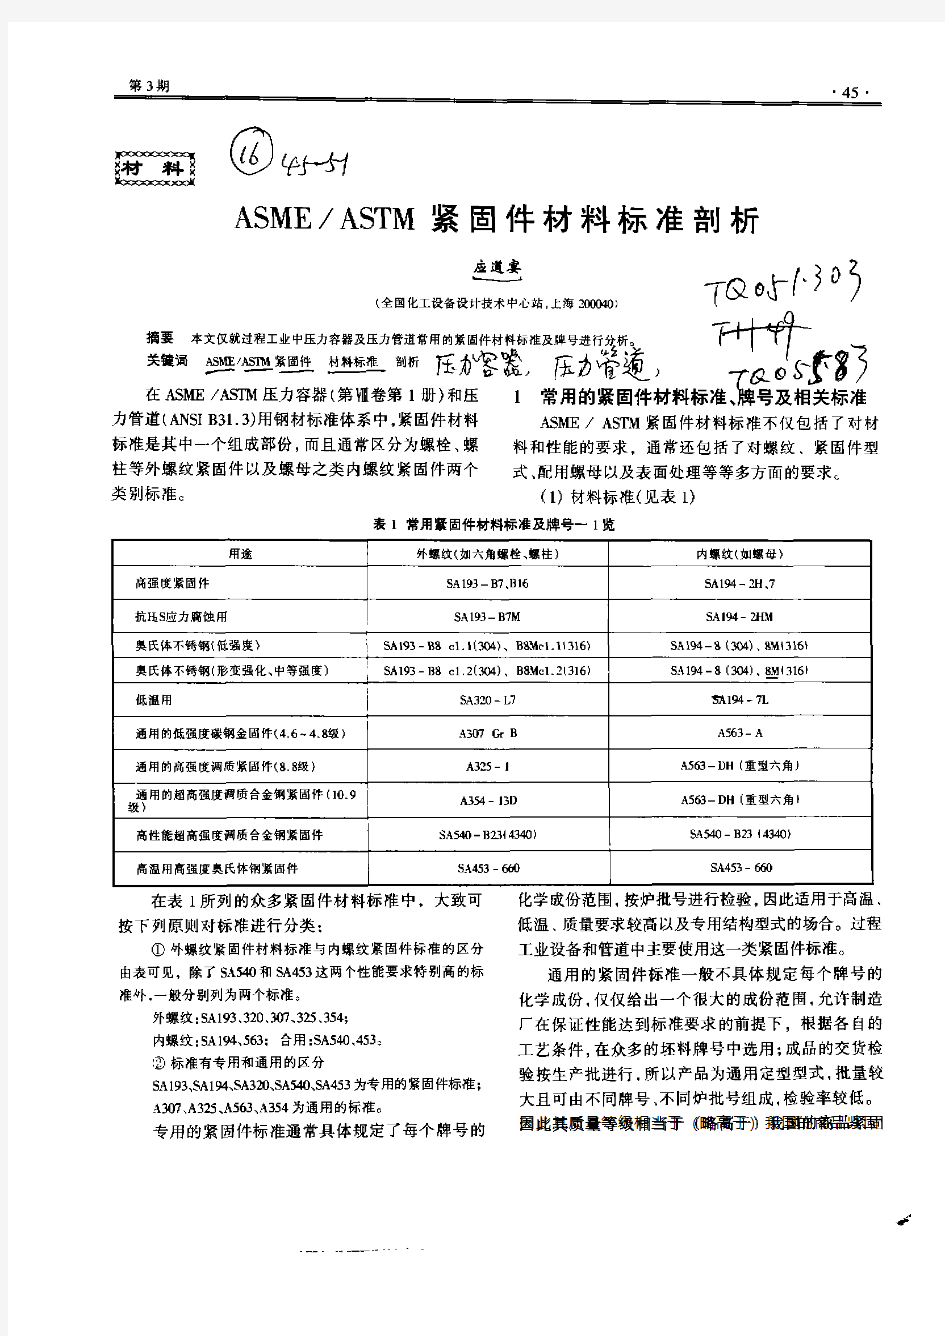 ASME／ASTM紧固件材料标准剖析